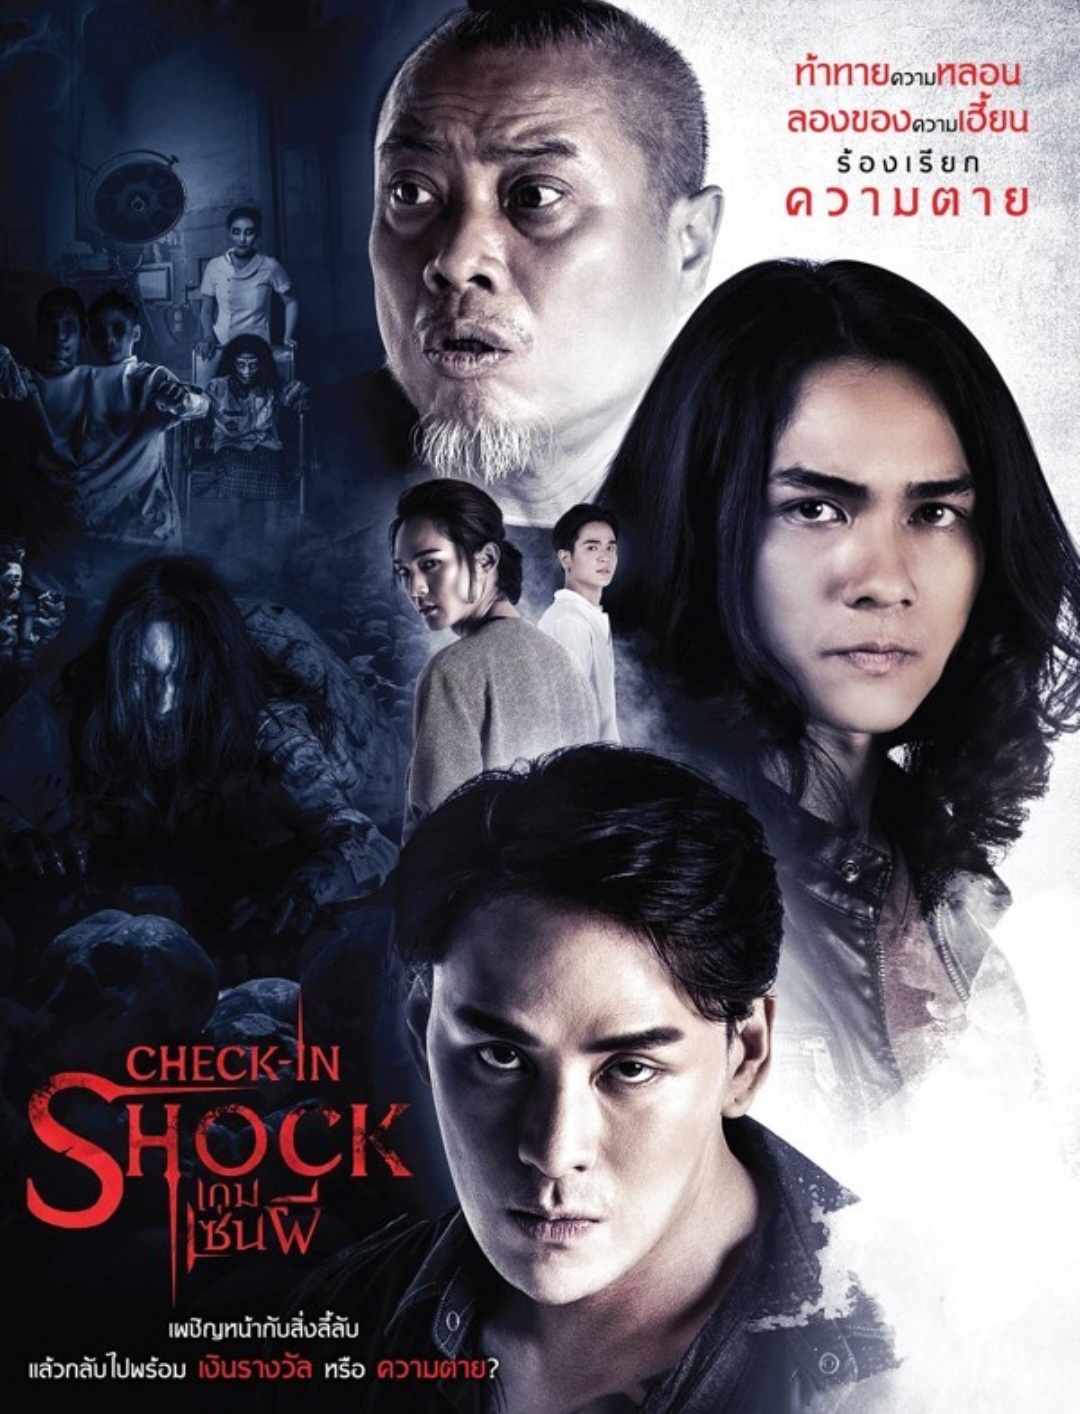 เช็คอินช็อค เกม เซ่น ผี 2020 หนังไทย สยองขวัญ Th 4278